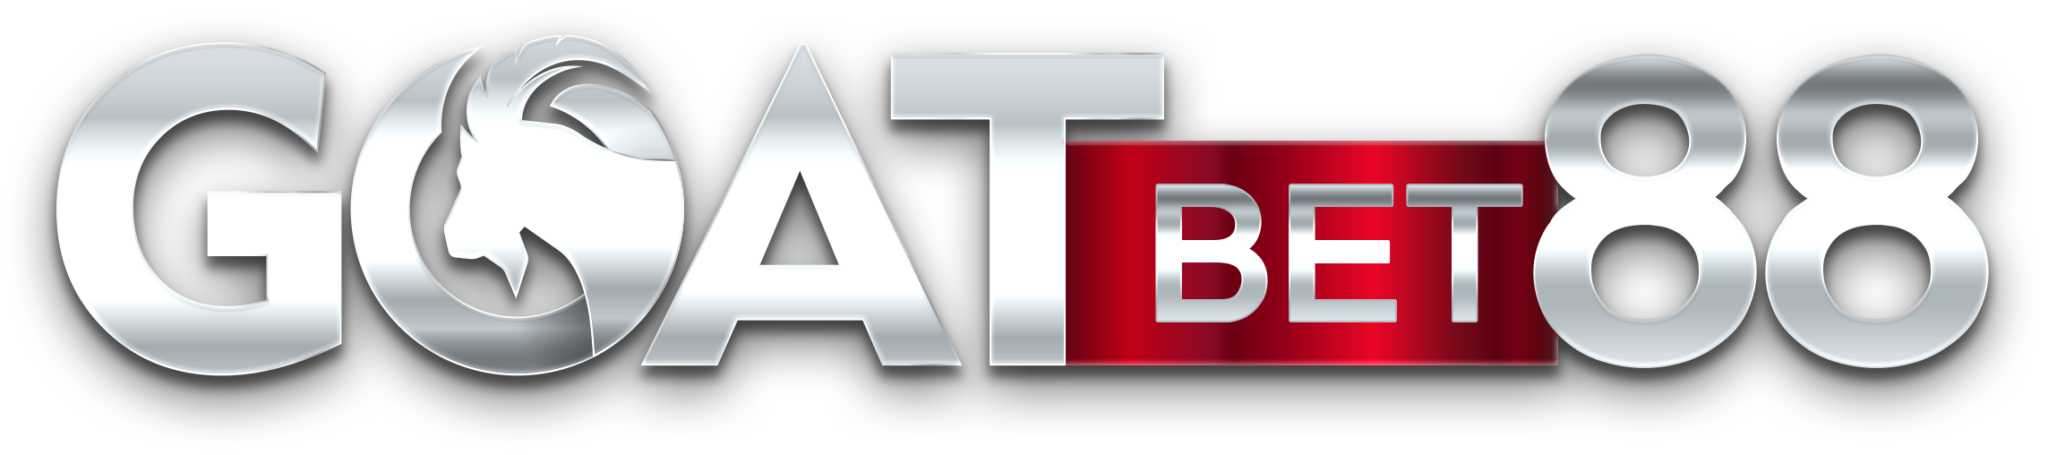 Goatbet88 logo